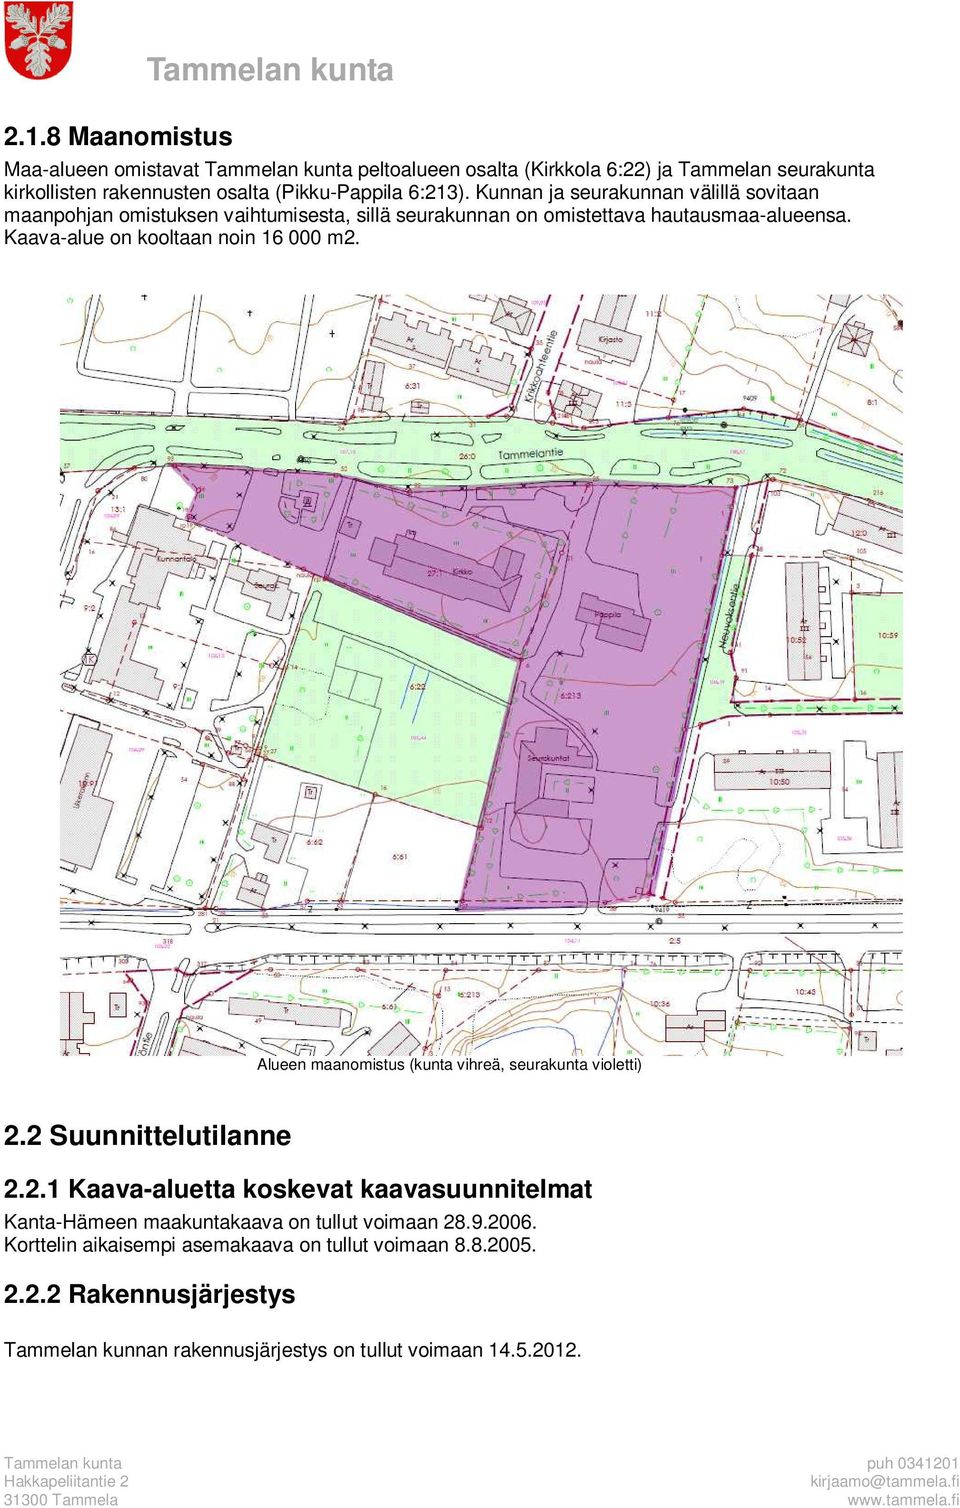 Kaava-alue on kooltaan noin 16 000 m2. Alueen maanomistus (kunta vihreä, seurakunta violetti) 2.2 Suunnittelutilanne 2.2.1 Kaava-aluetta koskevat kaavasuunnitelmat Kanta-Hämeen maakuntakaava on tullut voimaan 28.